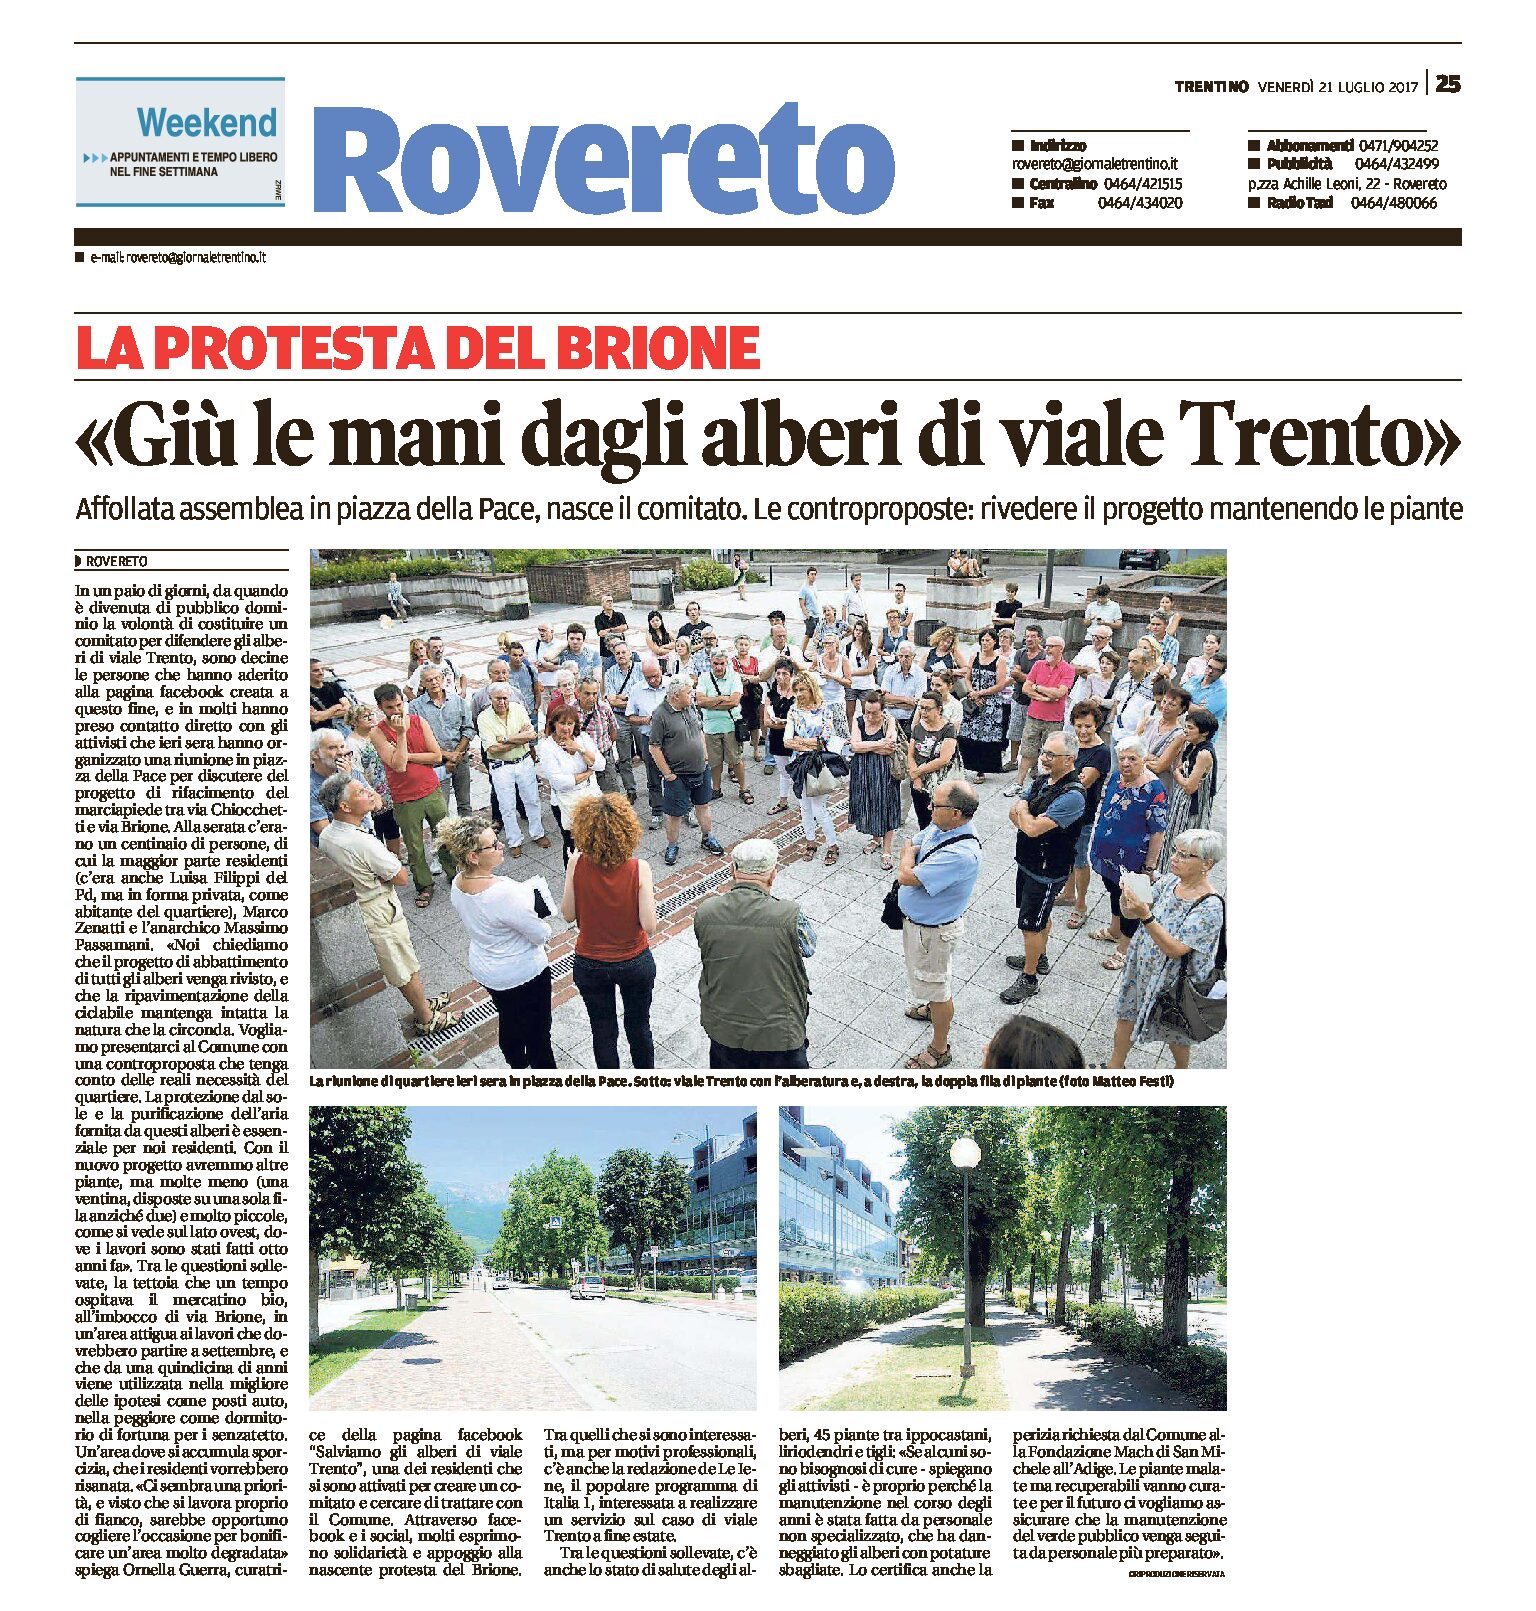 Rovereto: “giù le mani dagli alberi di viale Trento”. Affollata assemblea in piazza della Pace